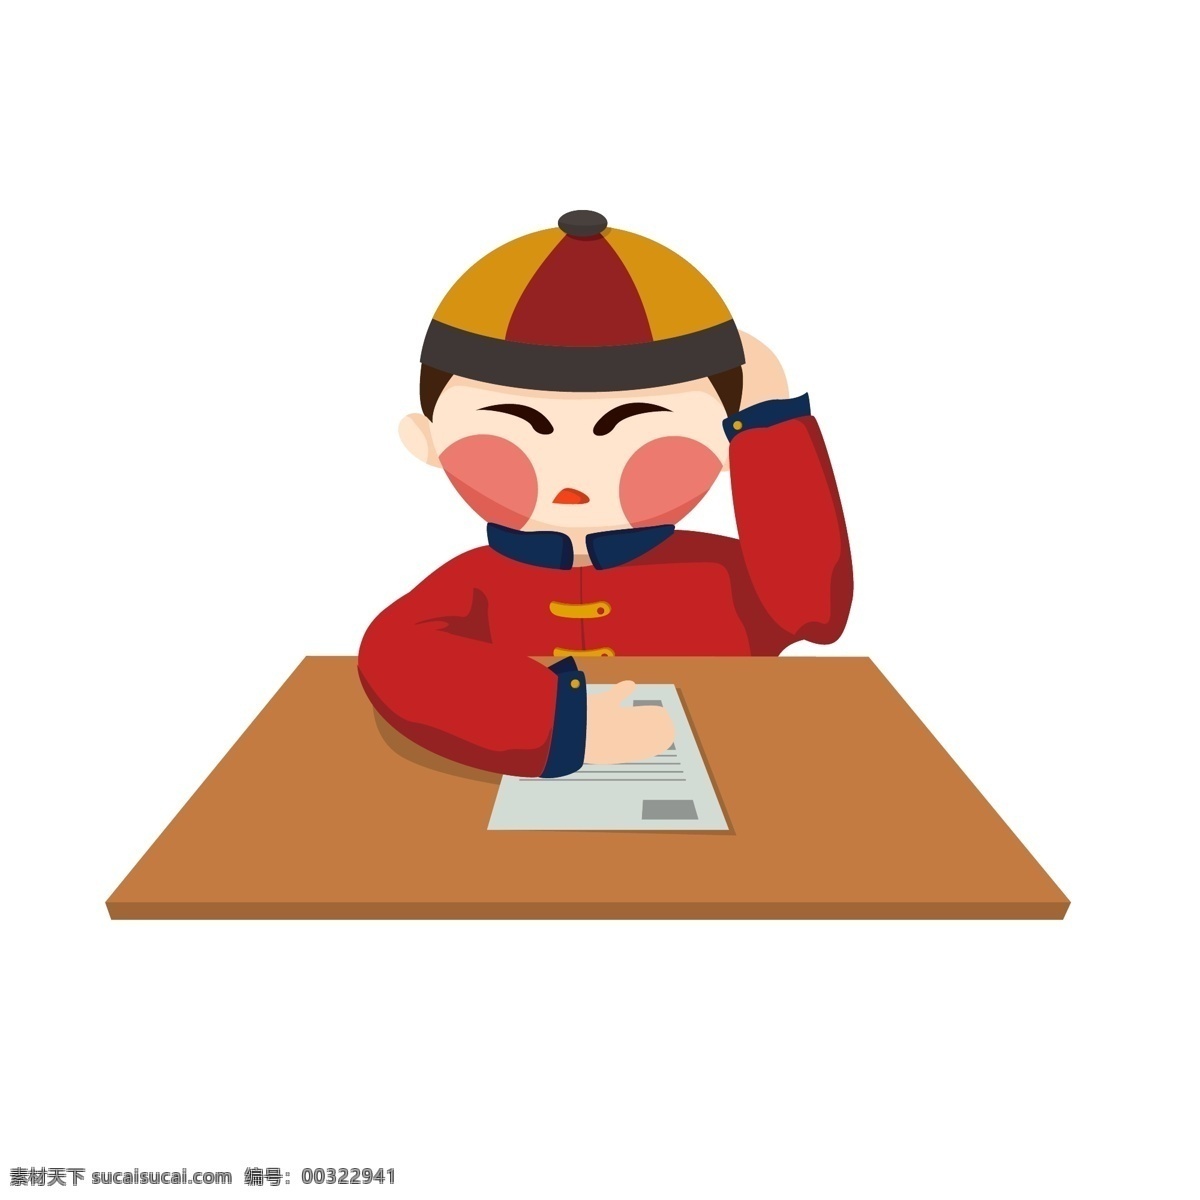 考试 答题 写字 读书 矢量 年画 娃娃 学习 男孩 中国风 红色 帽子 试卷 年画娃娃 挠头